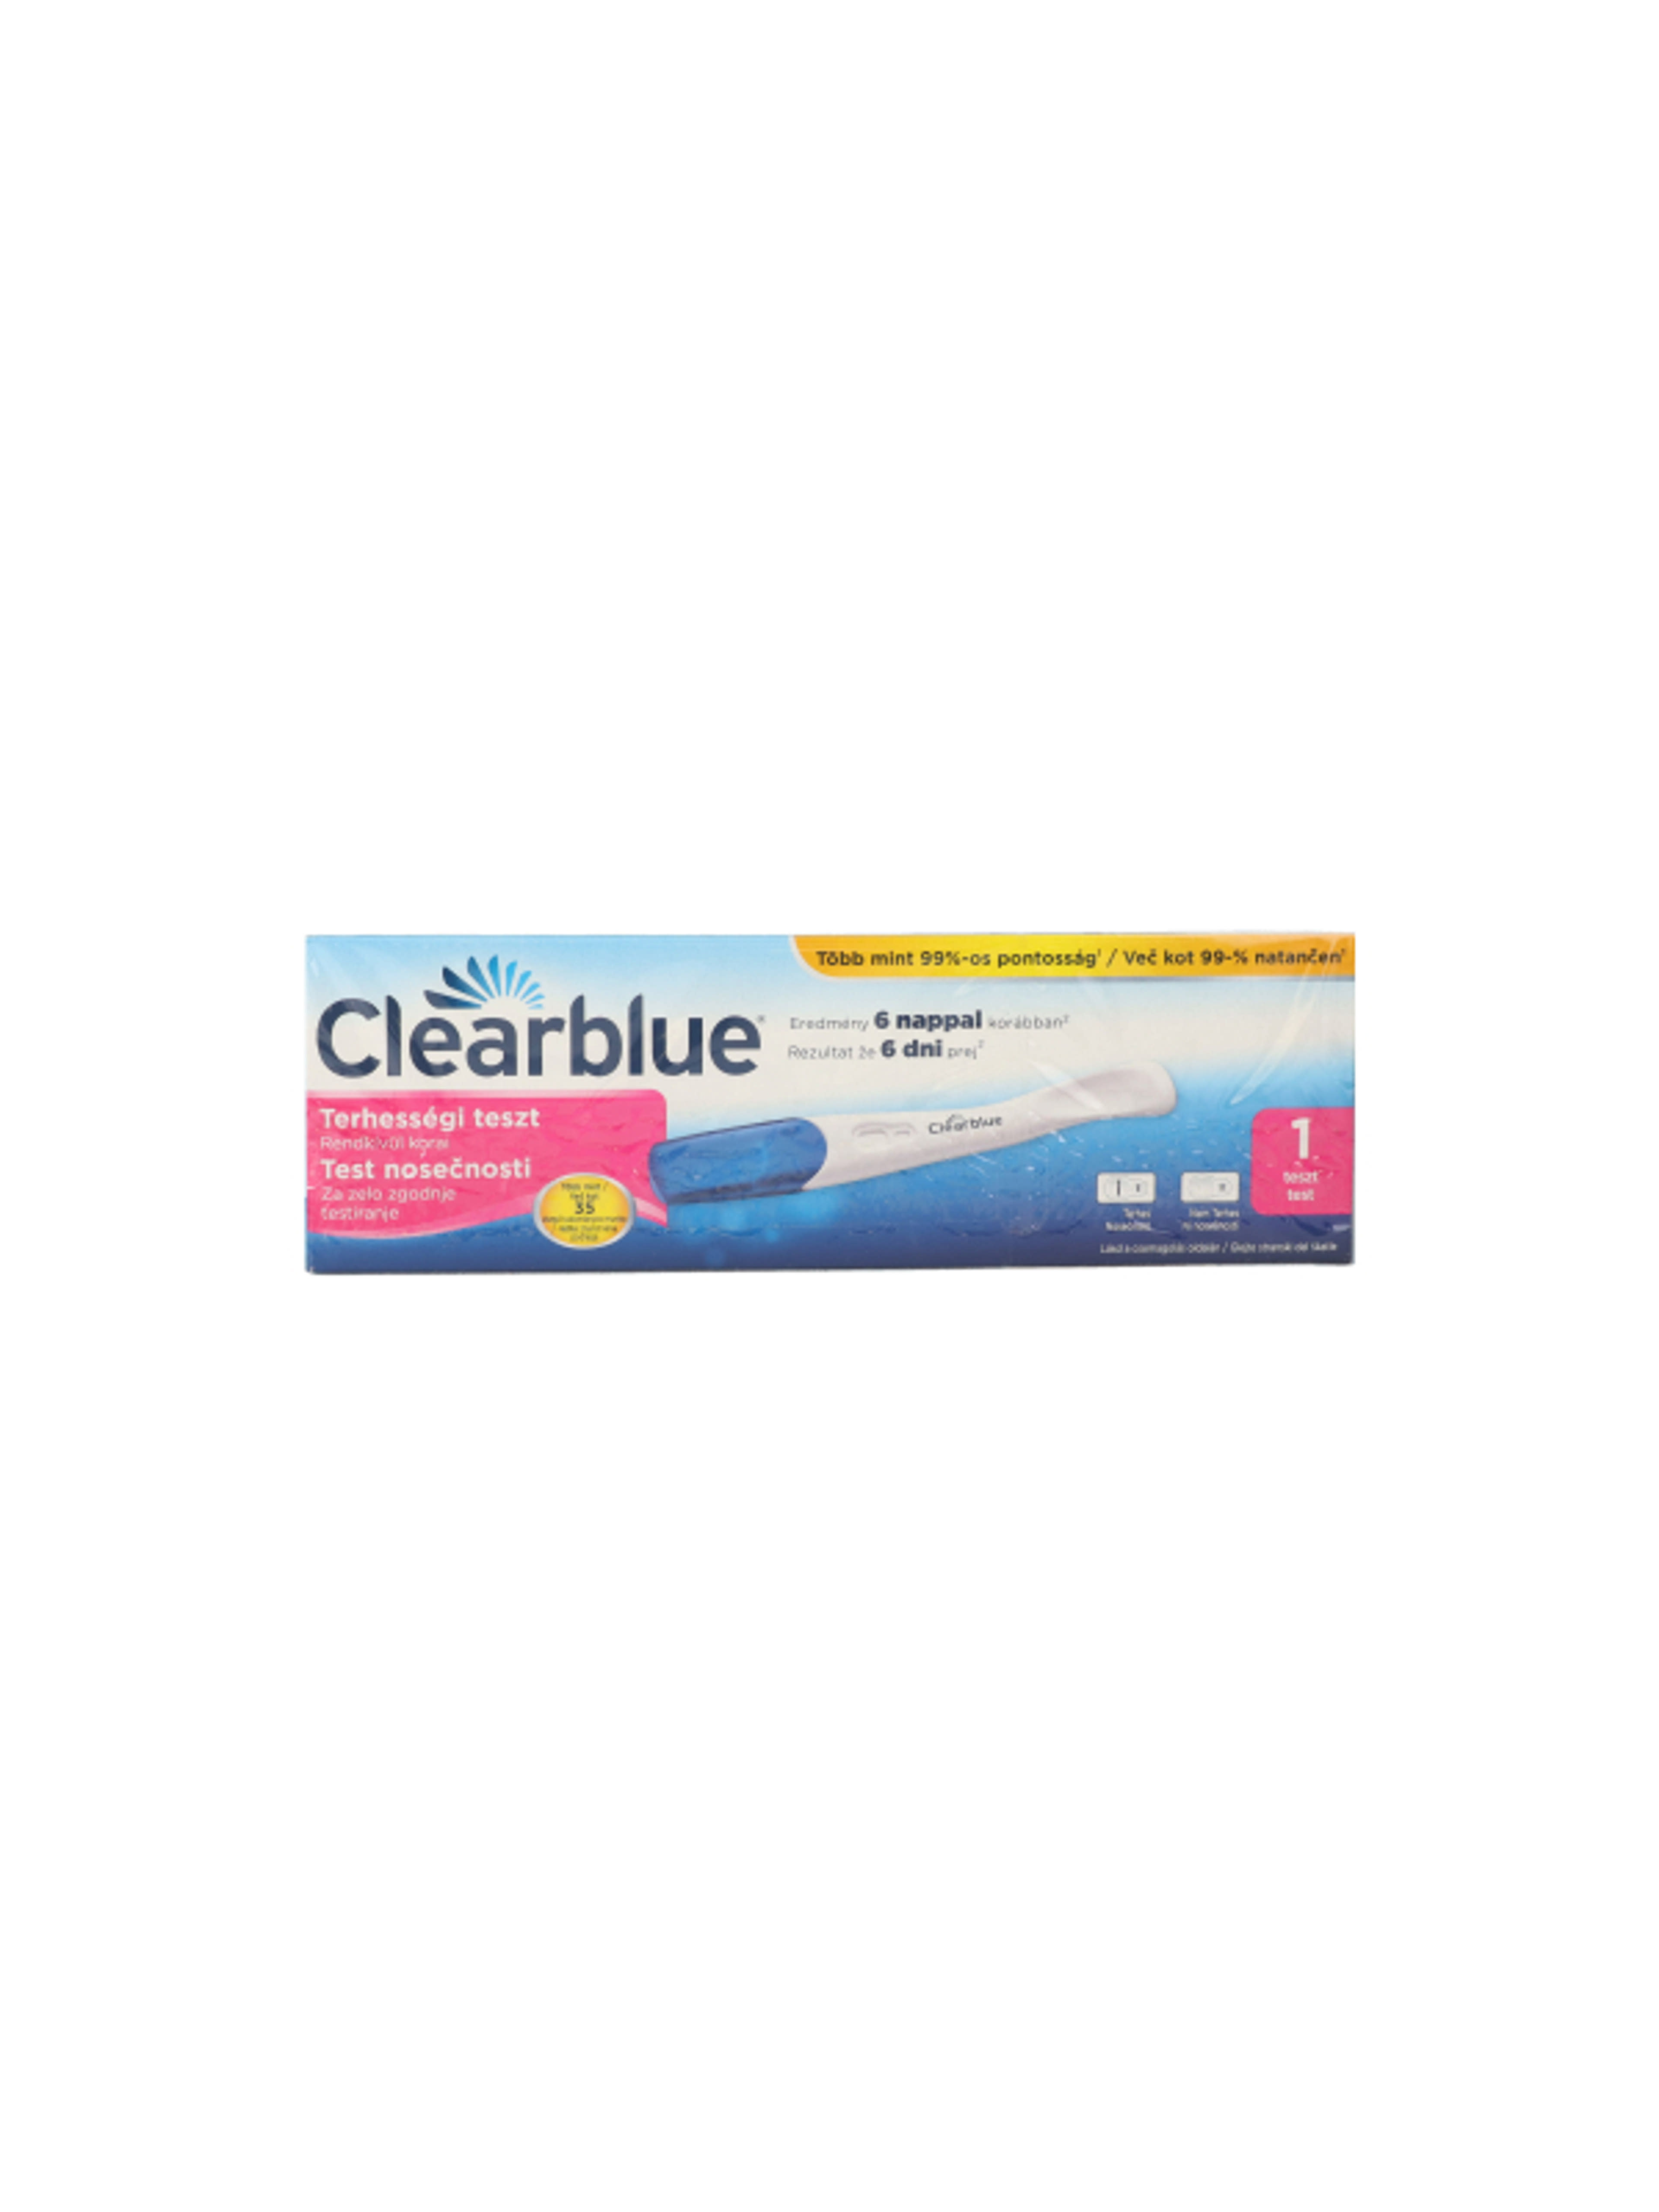 Clearblue rendkívül korai terhességi teszt - 1 db